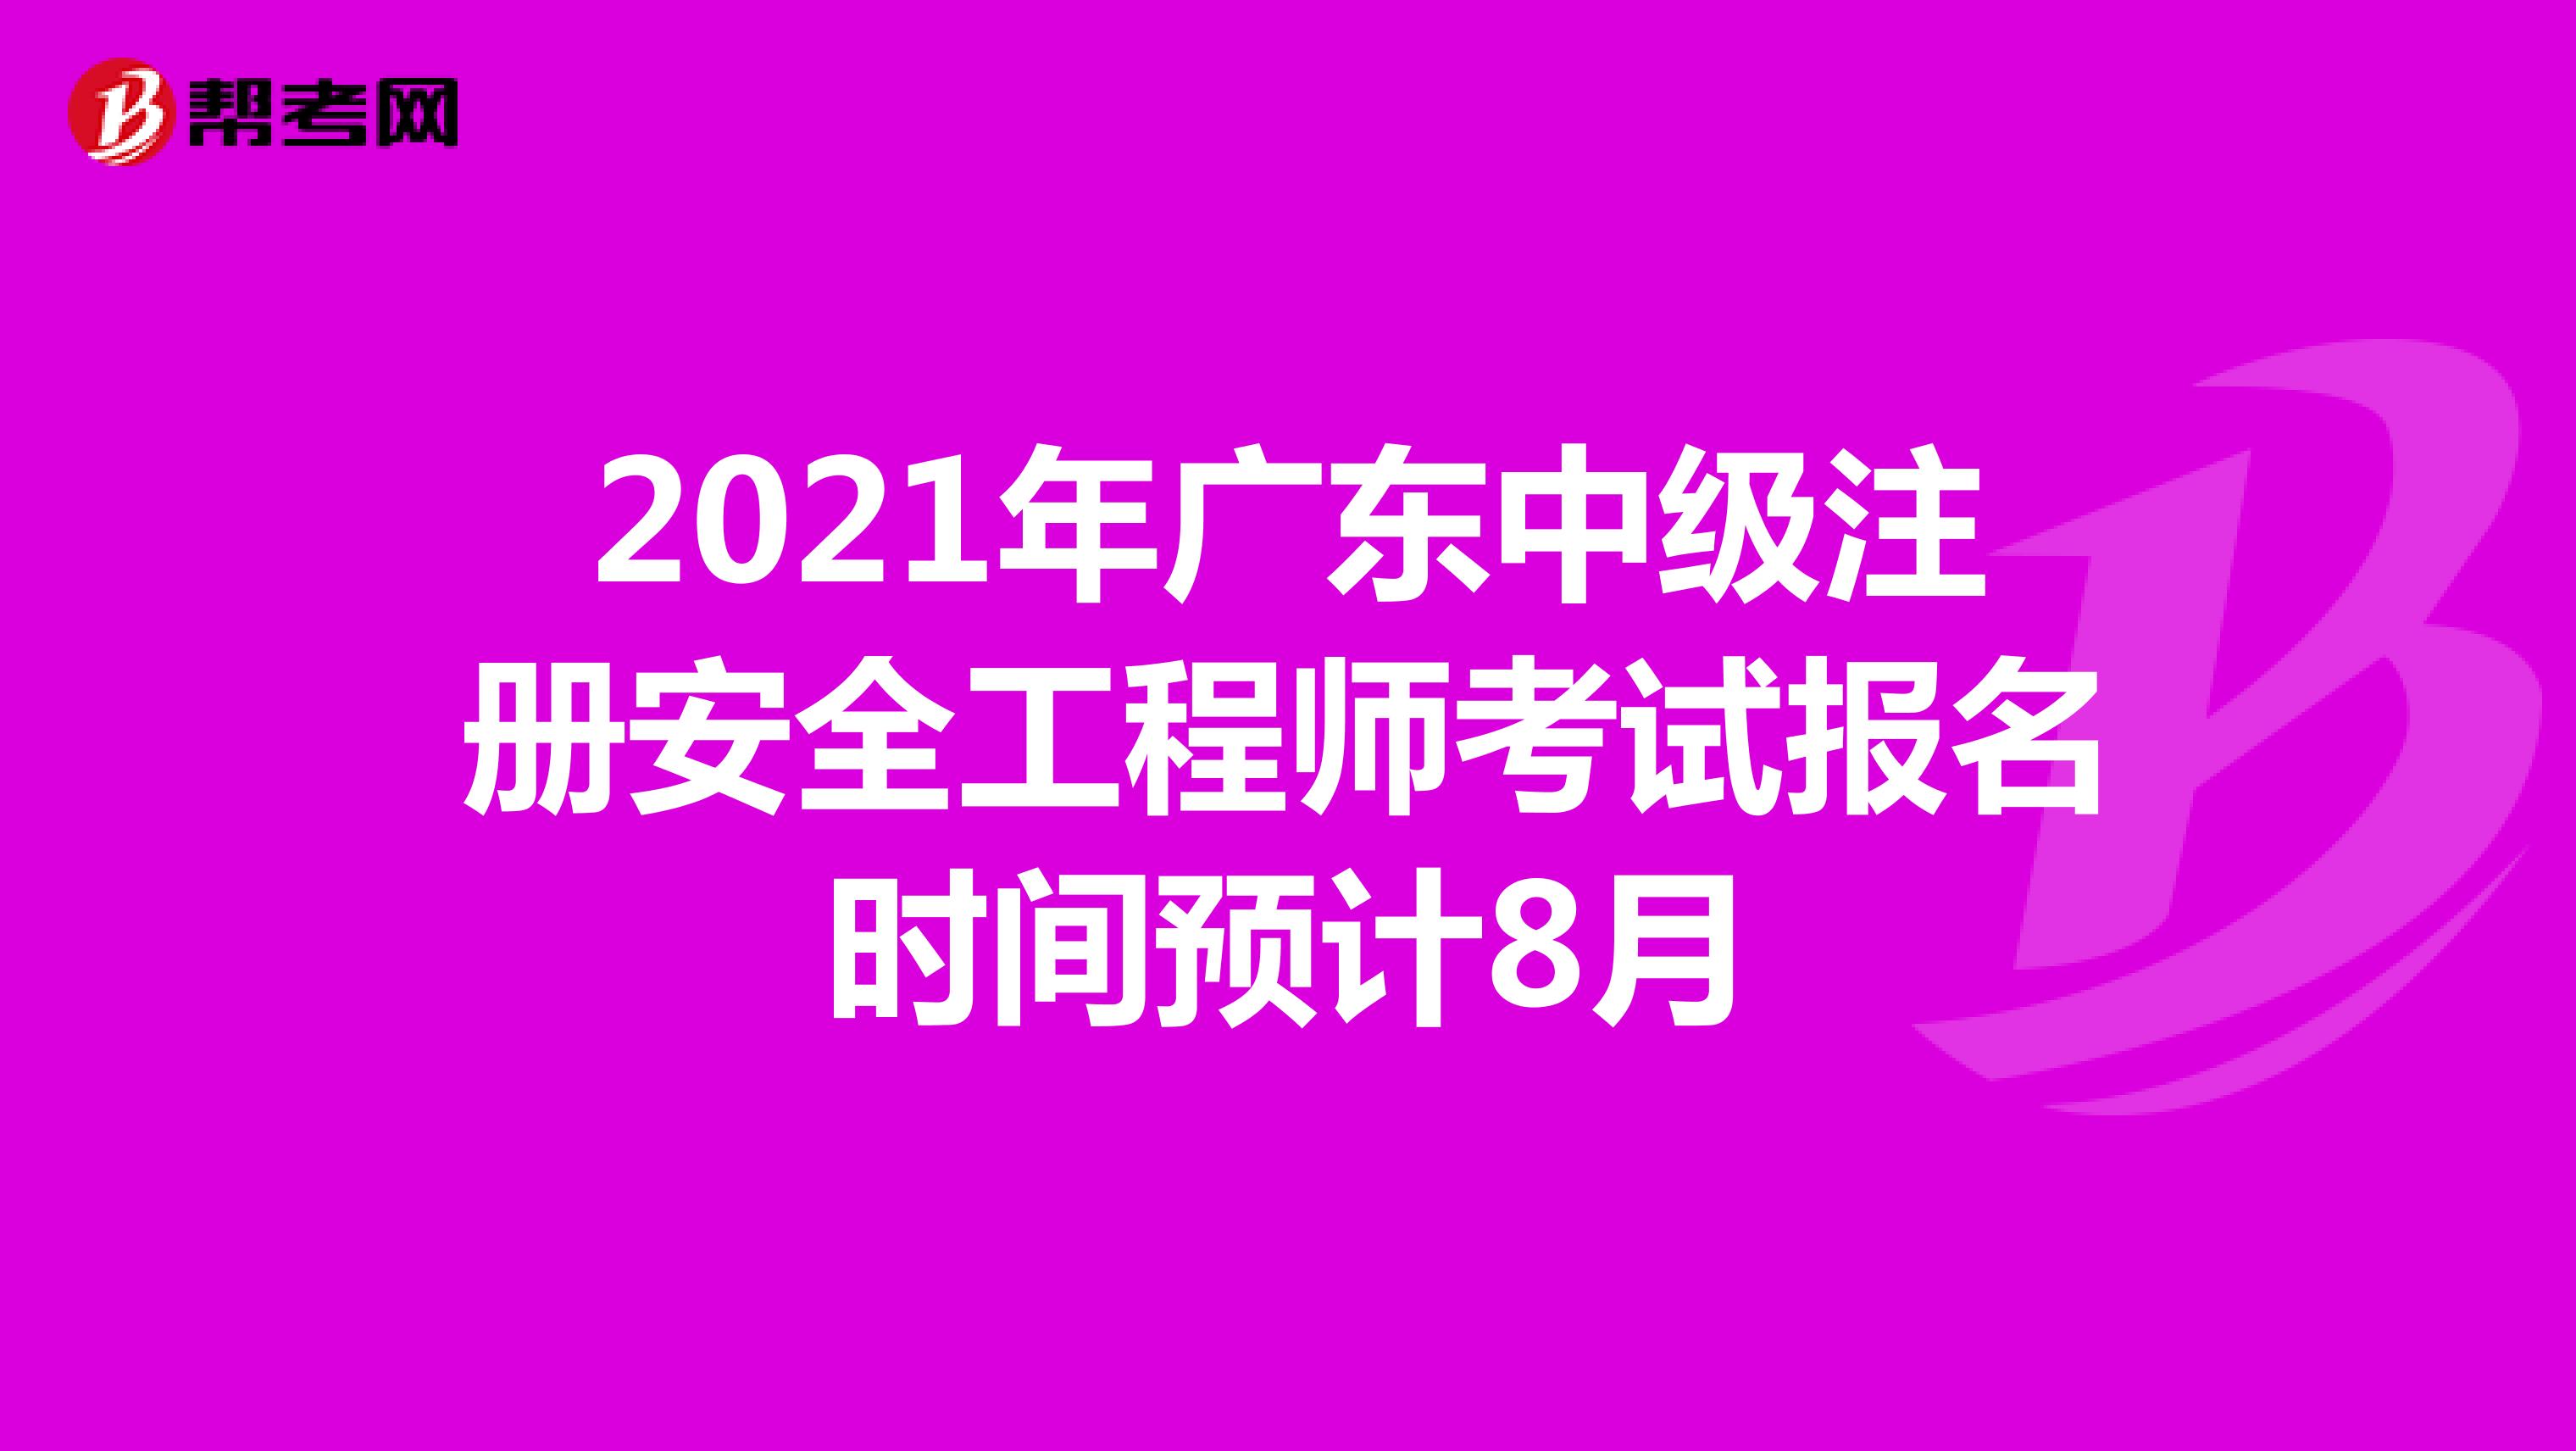 2021年广东中级注册安全工程师考试报名时间预计8月